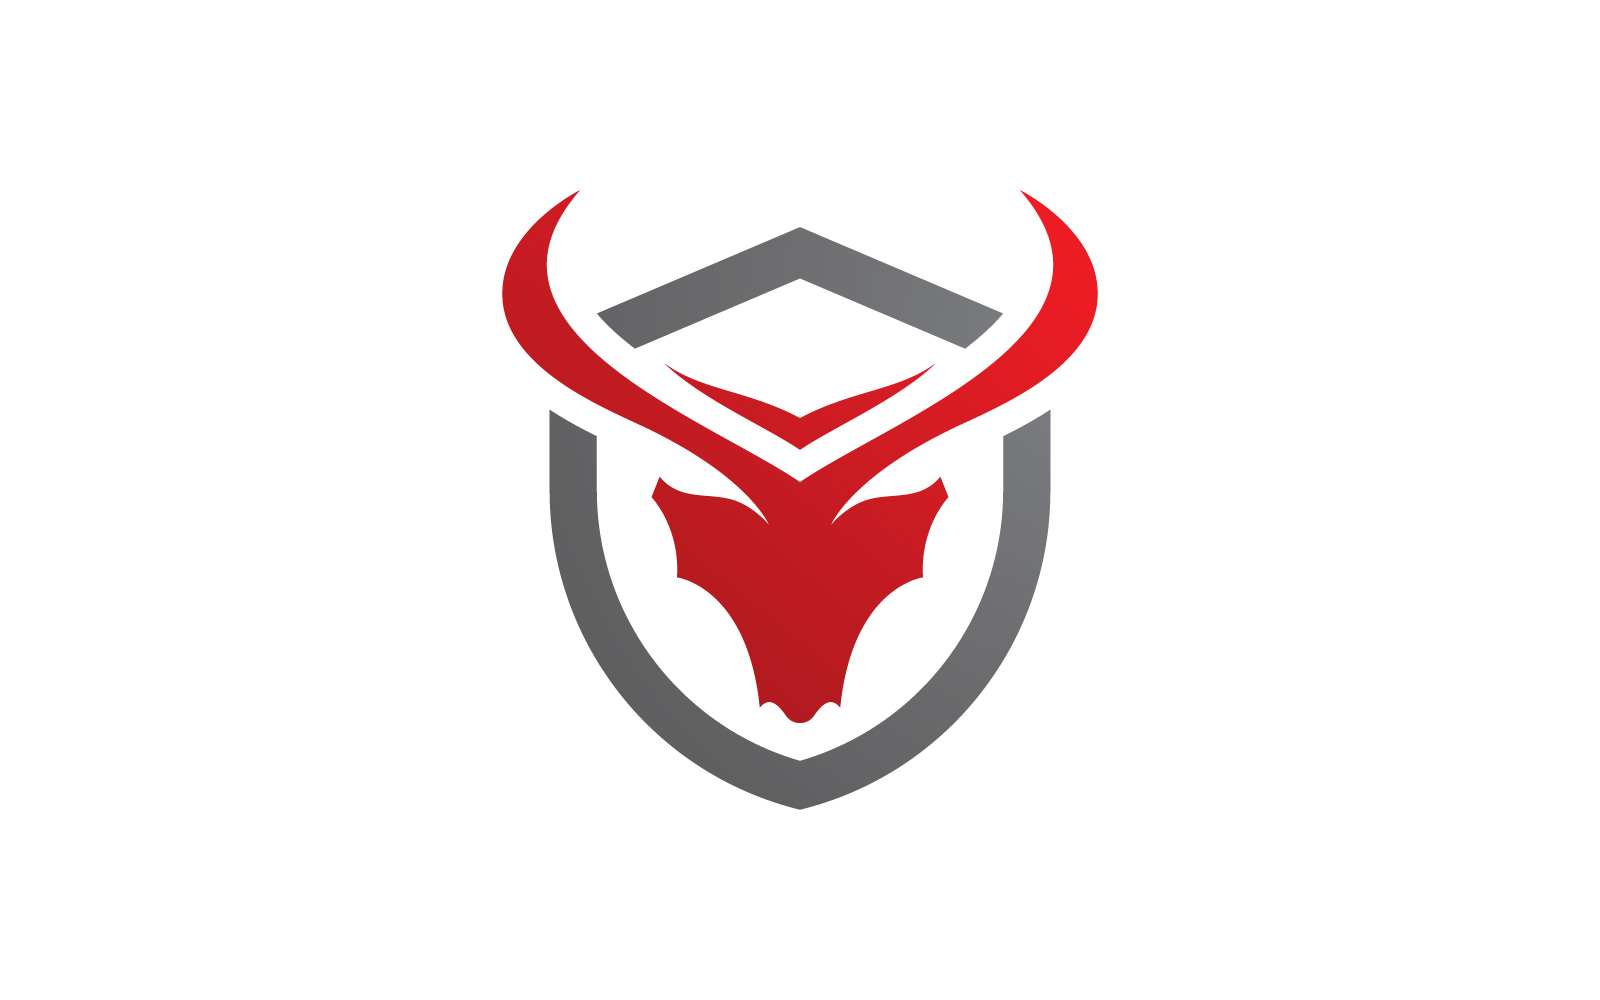 Bull horn logo symbols vector V8